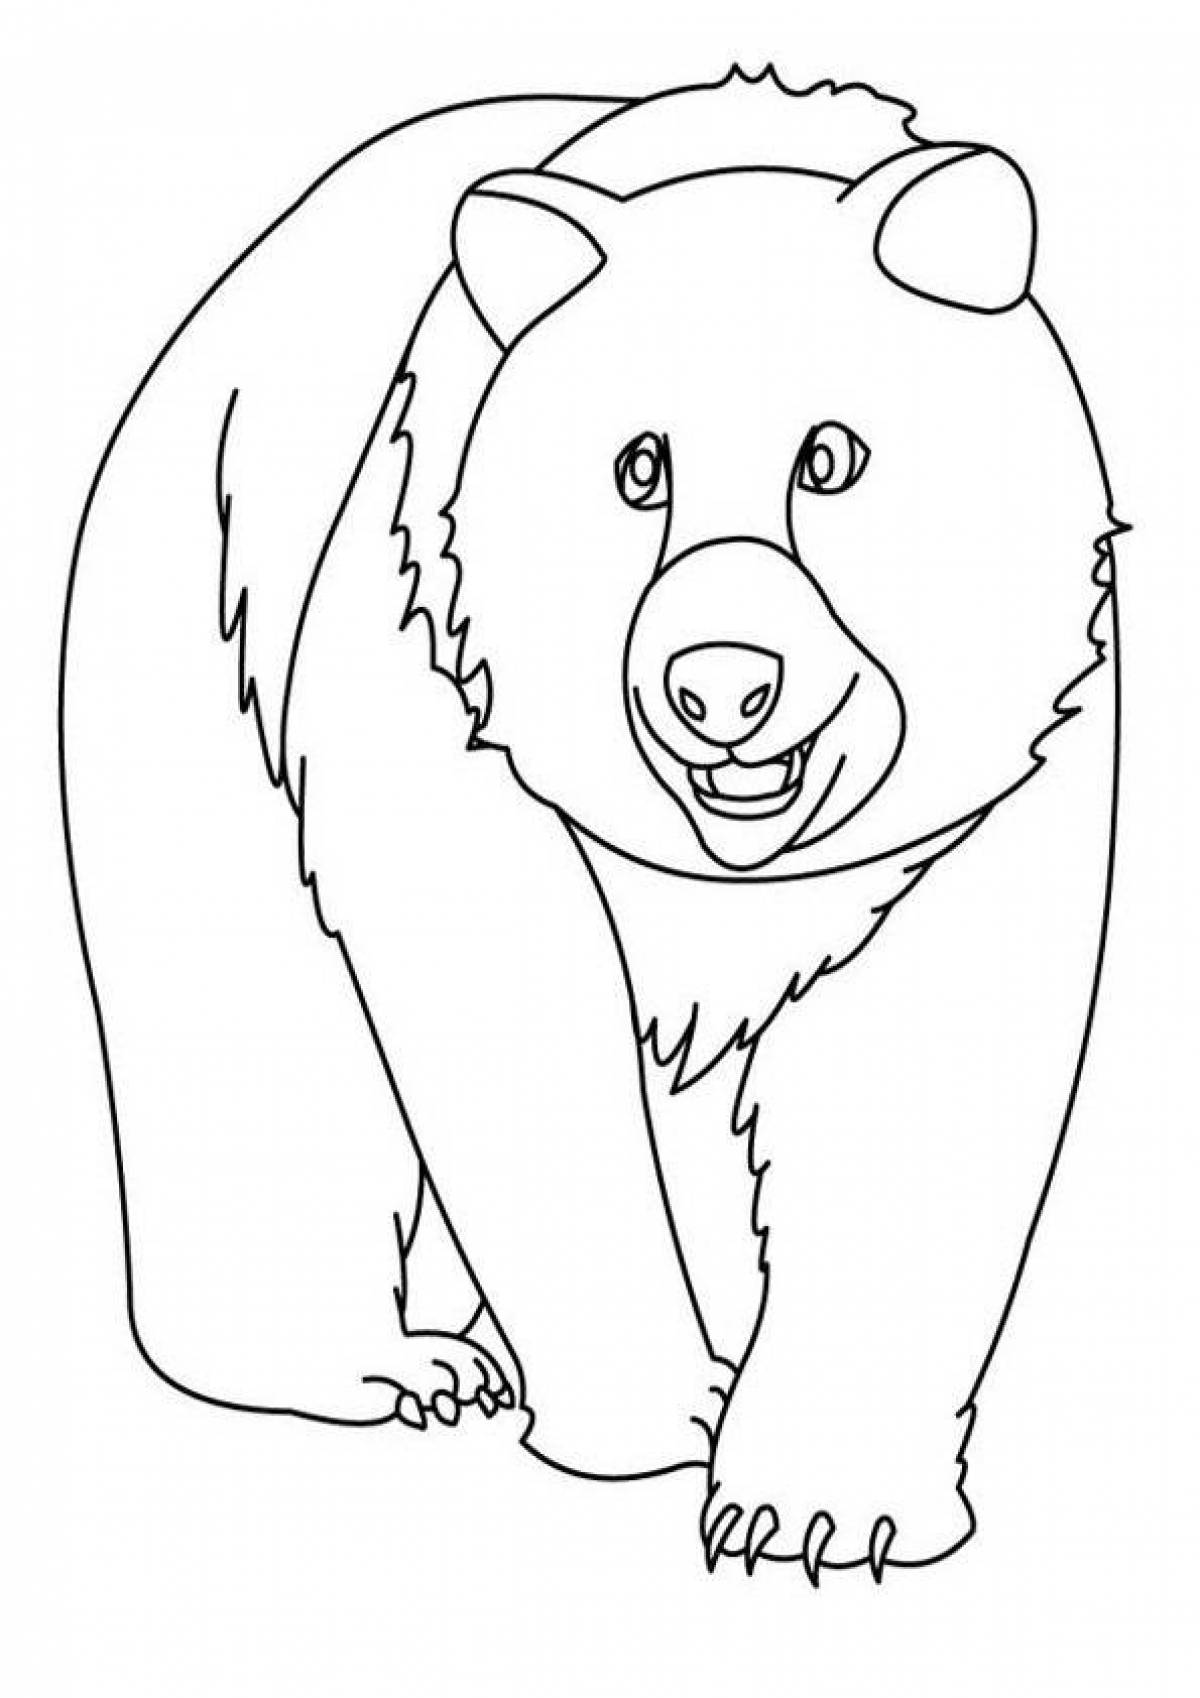 Раскраска озорной медведь для детей